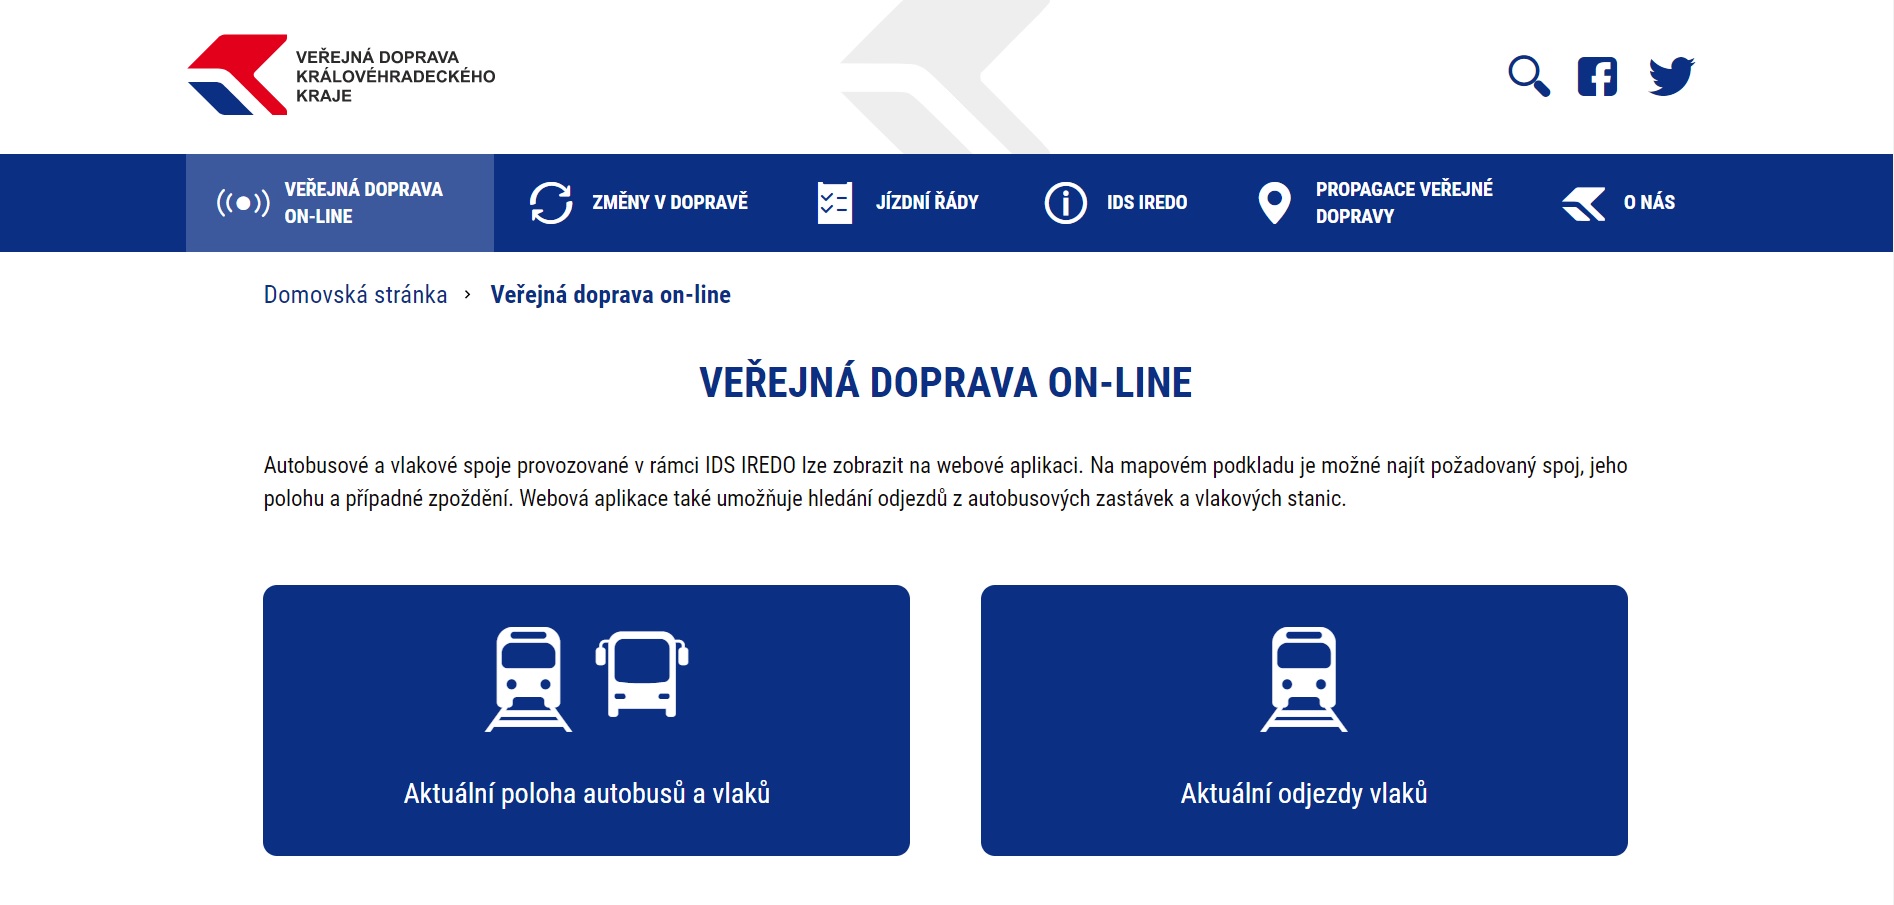 Nový web cestující provede veřejnou dopravu v kraji